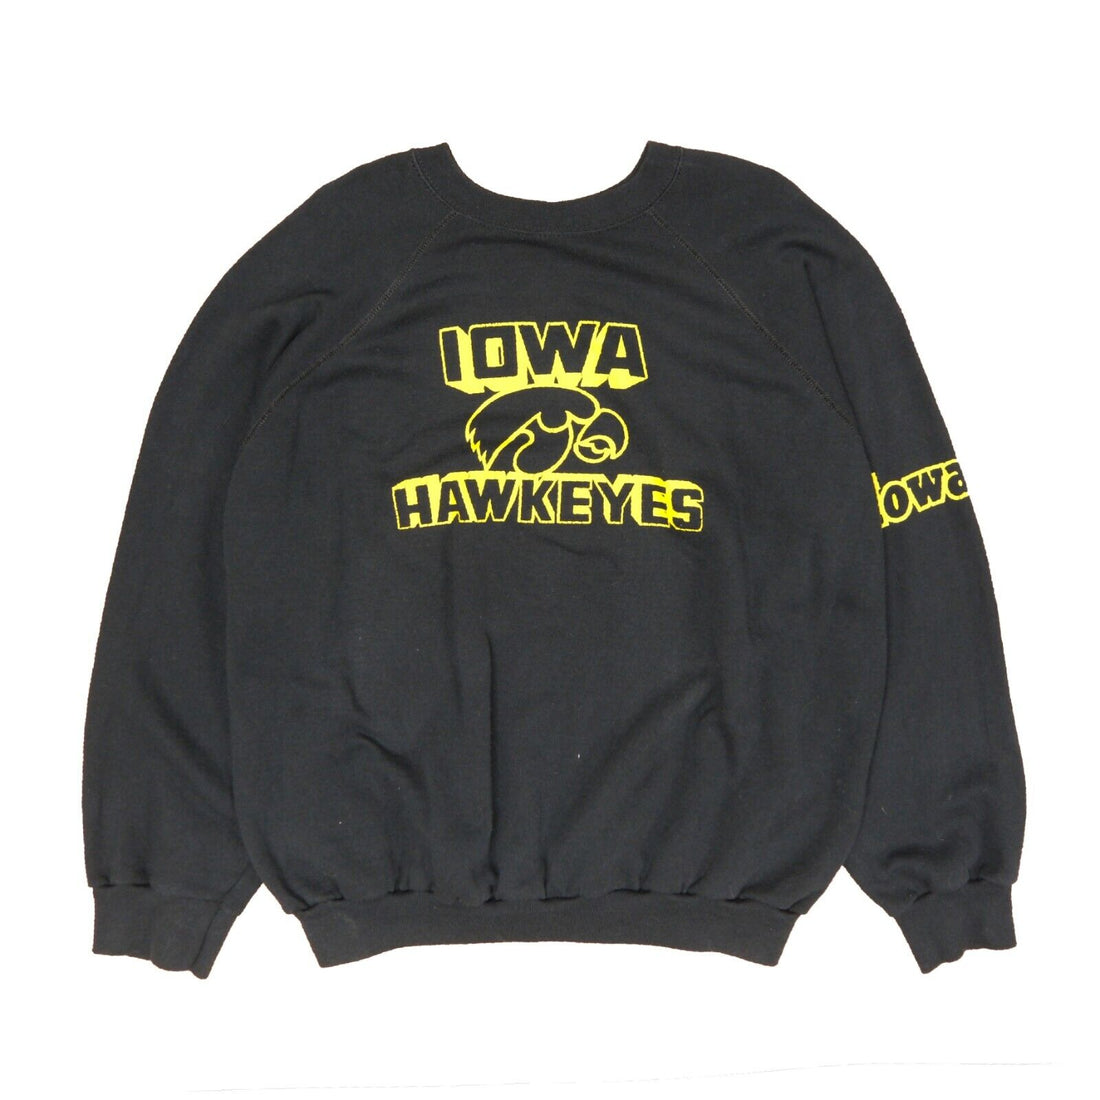 Vintage Iowa Hawkeyes Sweatshirt Crewneck Size 3XL Black NCAA